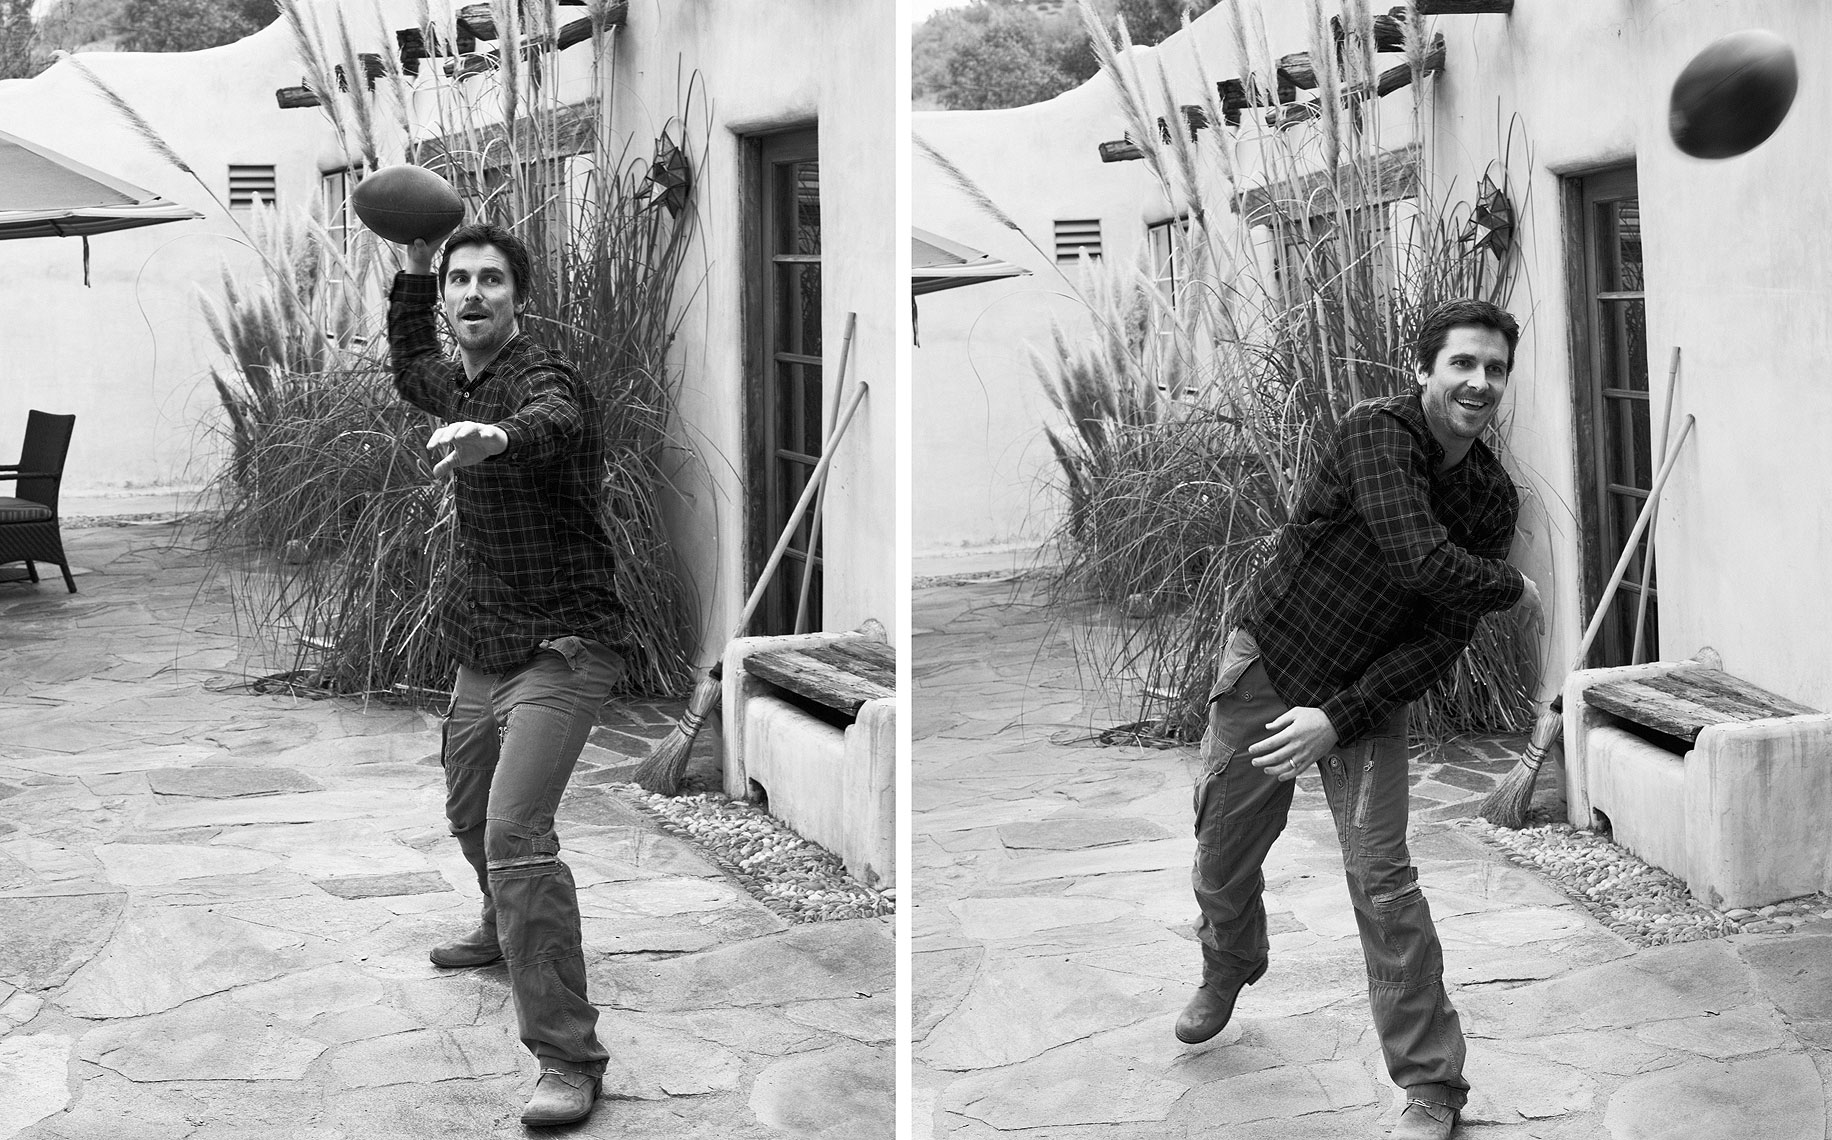 Christian-Bale-by-Robert-Ascroft-03.jpg